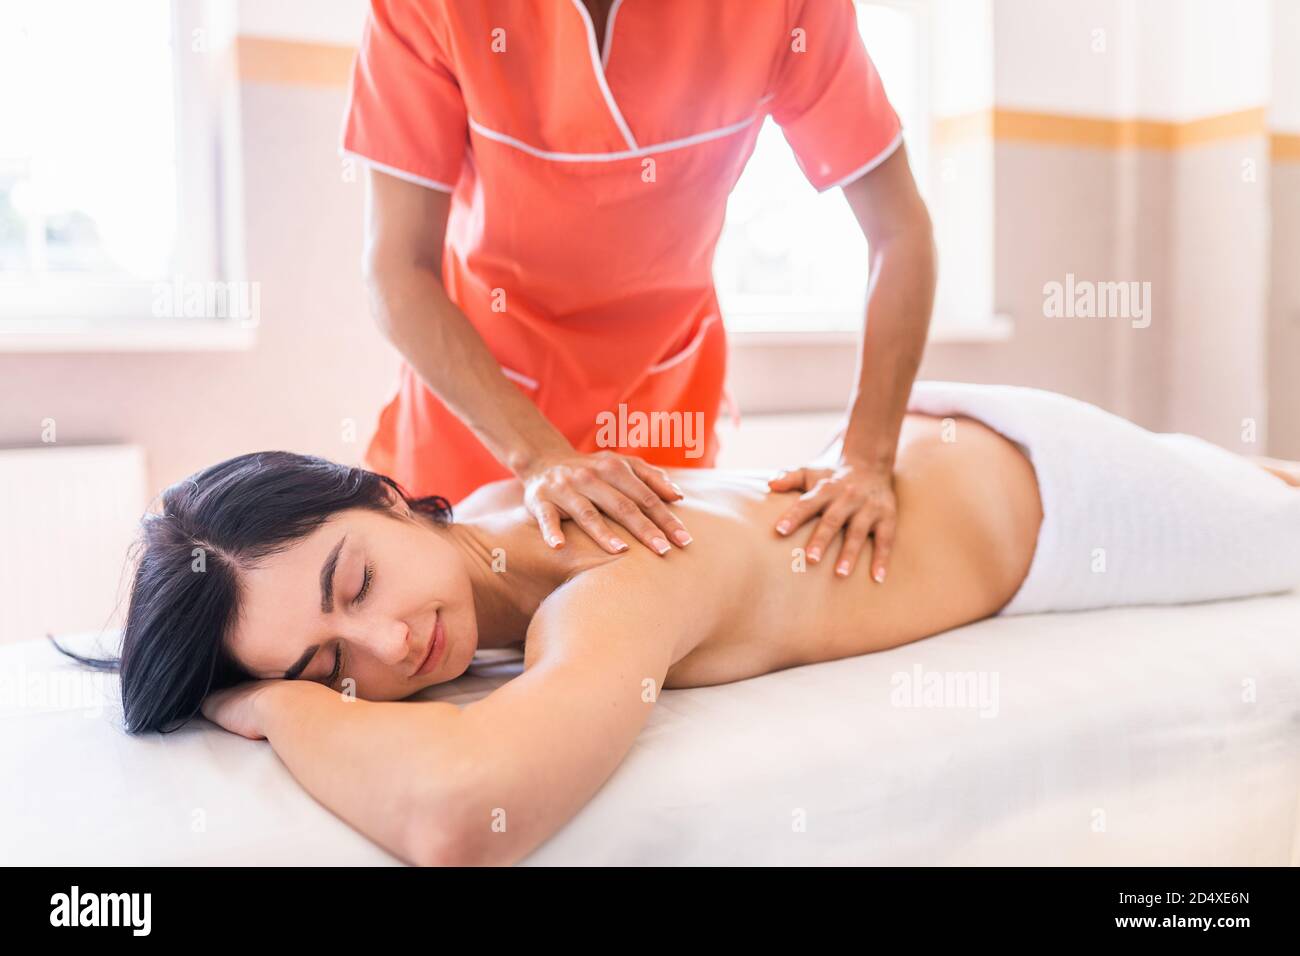 La jeune femme a un massage médical de récupération. Gros plan d'une femme se détendant pendant un massage du dos et du cou Banque D'Images